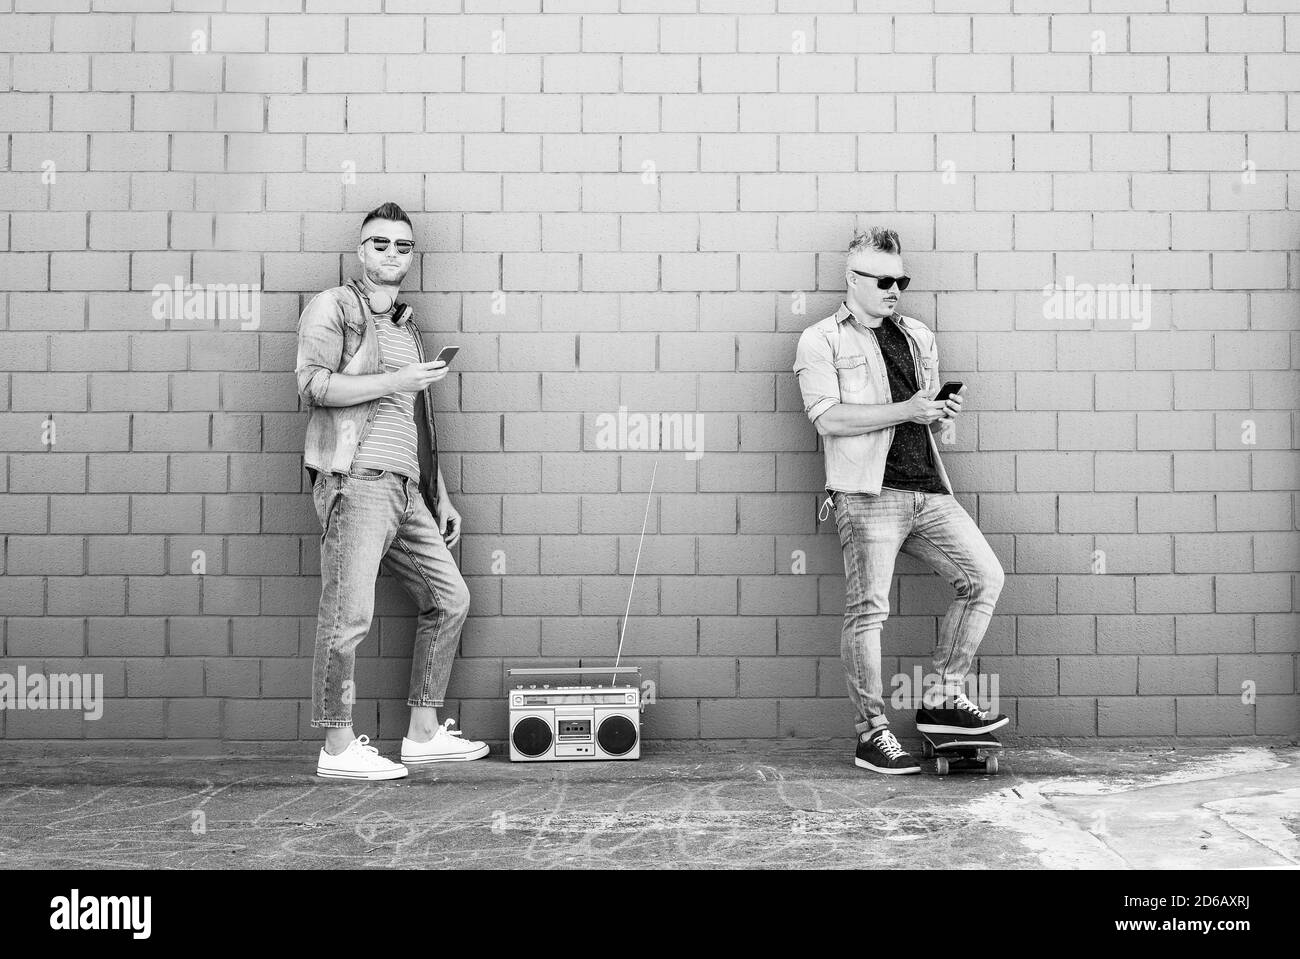 Deux jeunes gens regardent le téléphone mobile contre un mur de briques - deux gars cool écoutant de la musique avec une stéréo boombox vintage en plein air dans la rue Banque D'Images